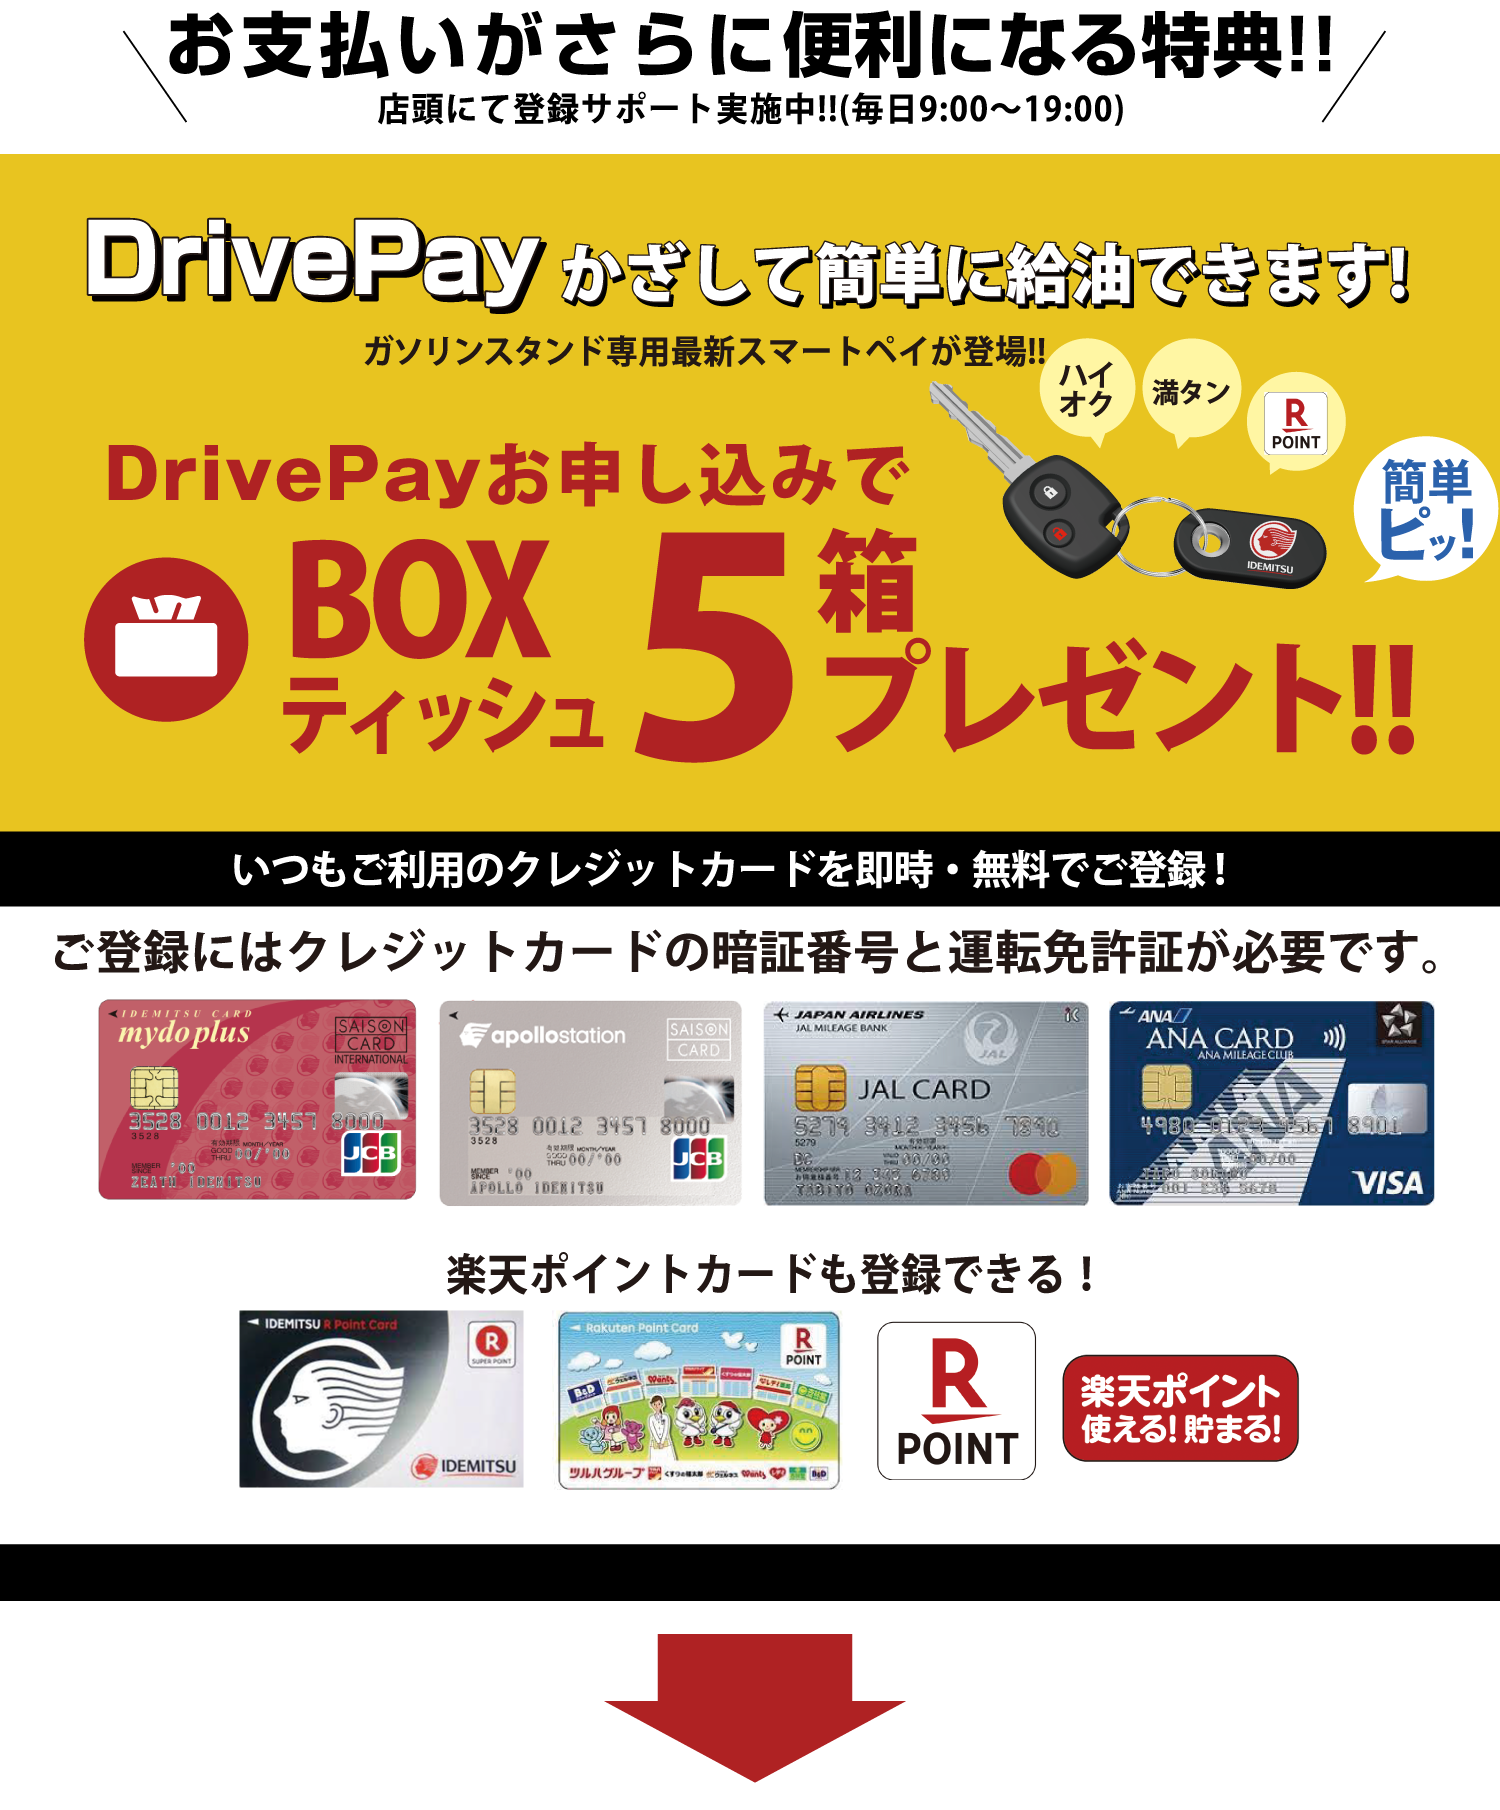 お支払がさらに便利になる特典 DrivePayかざして簡単に給油できます! DrivePayお申し込みでボックスティッシュ5箱プレゼント 12.10までは10箱プレゼント